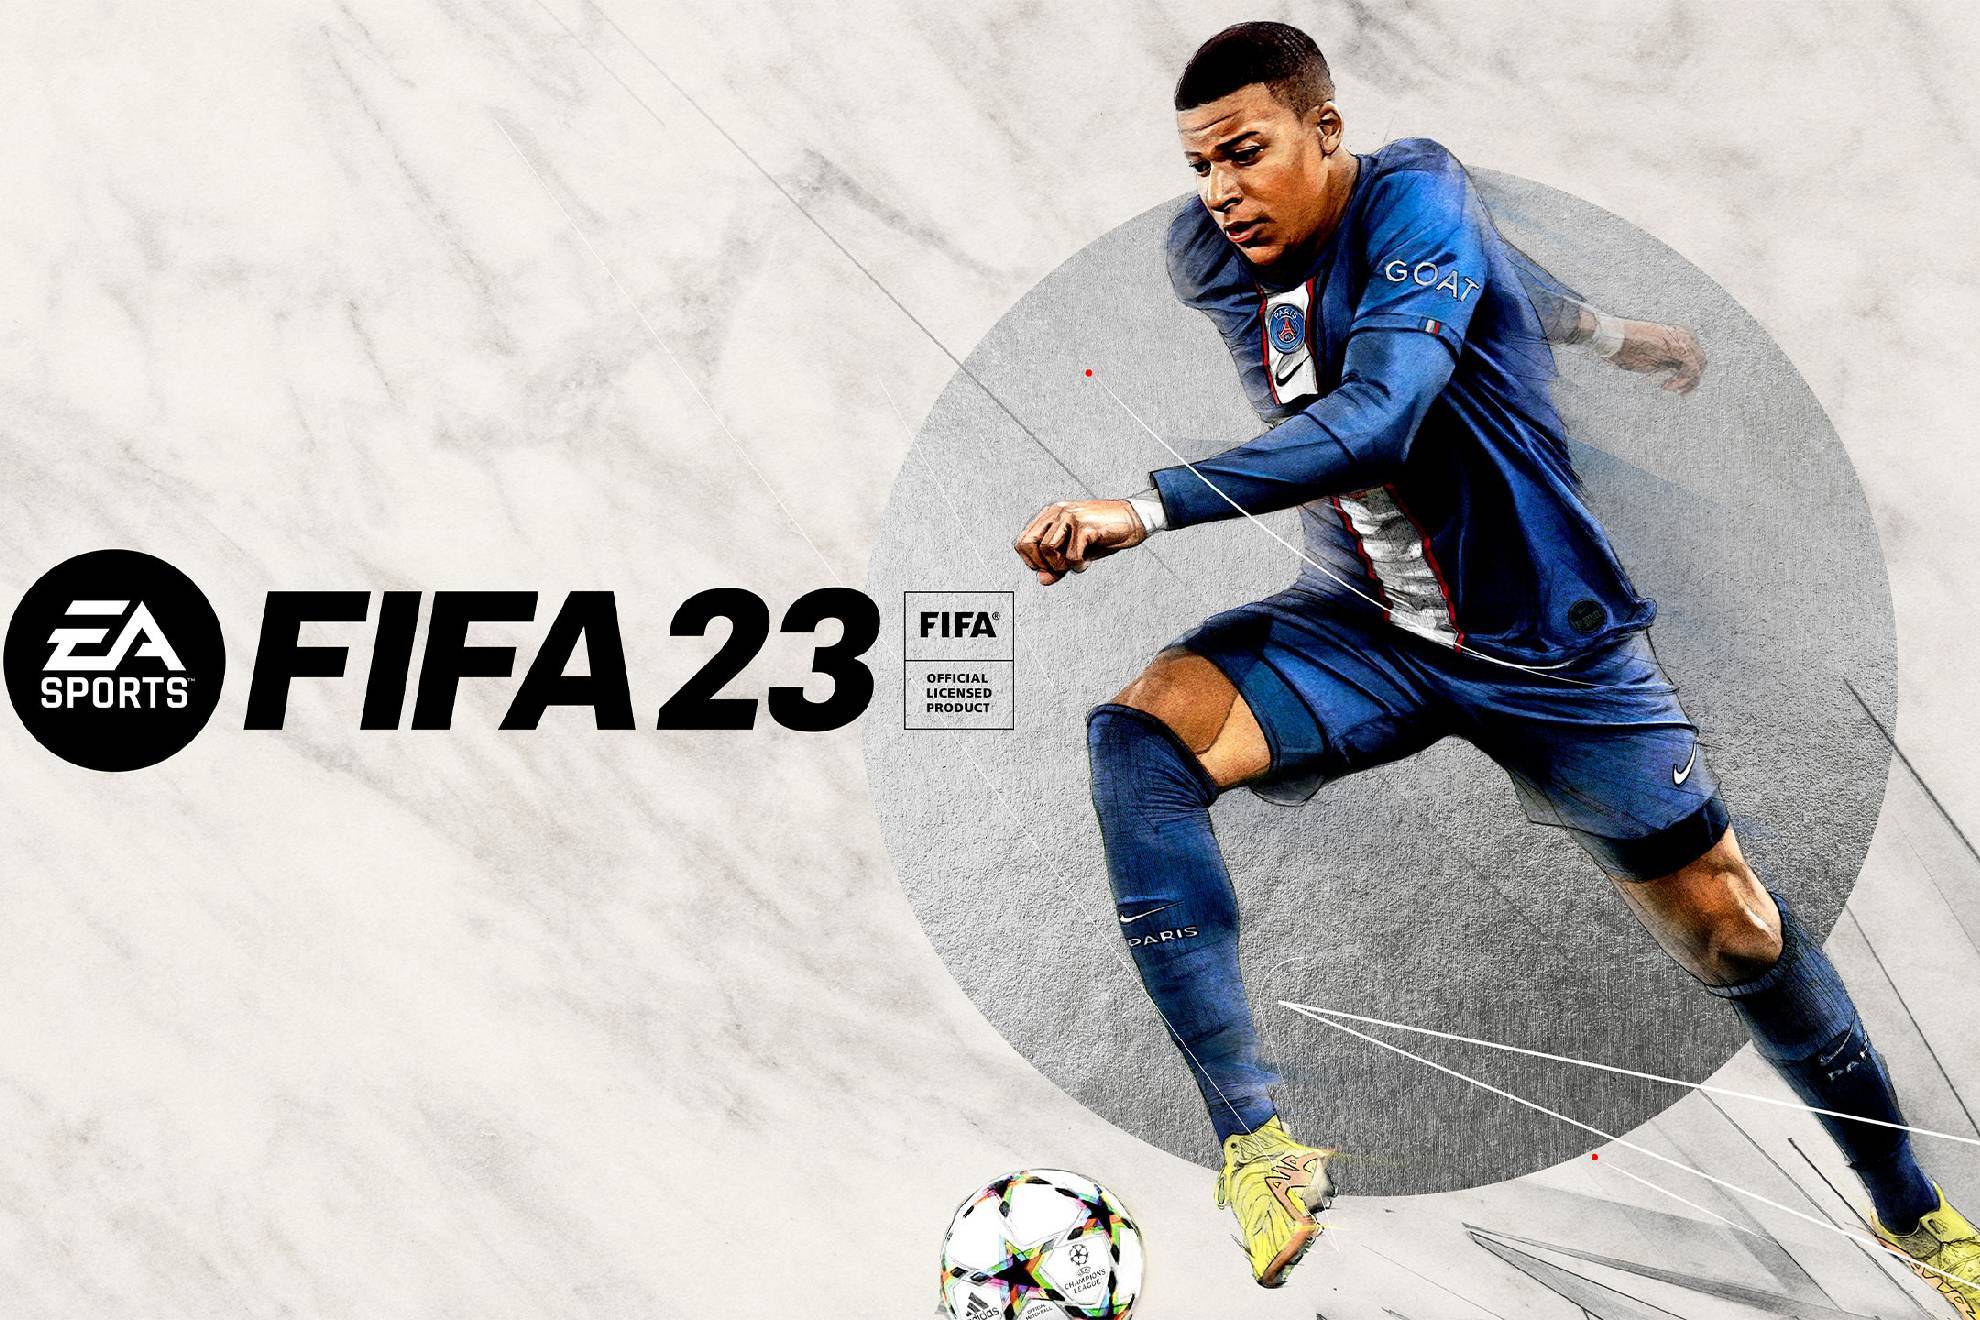 'FIFA 23', el videojuego más vendido en la historia de EA Sports.